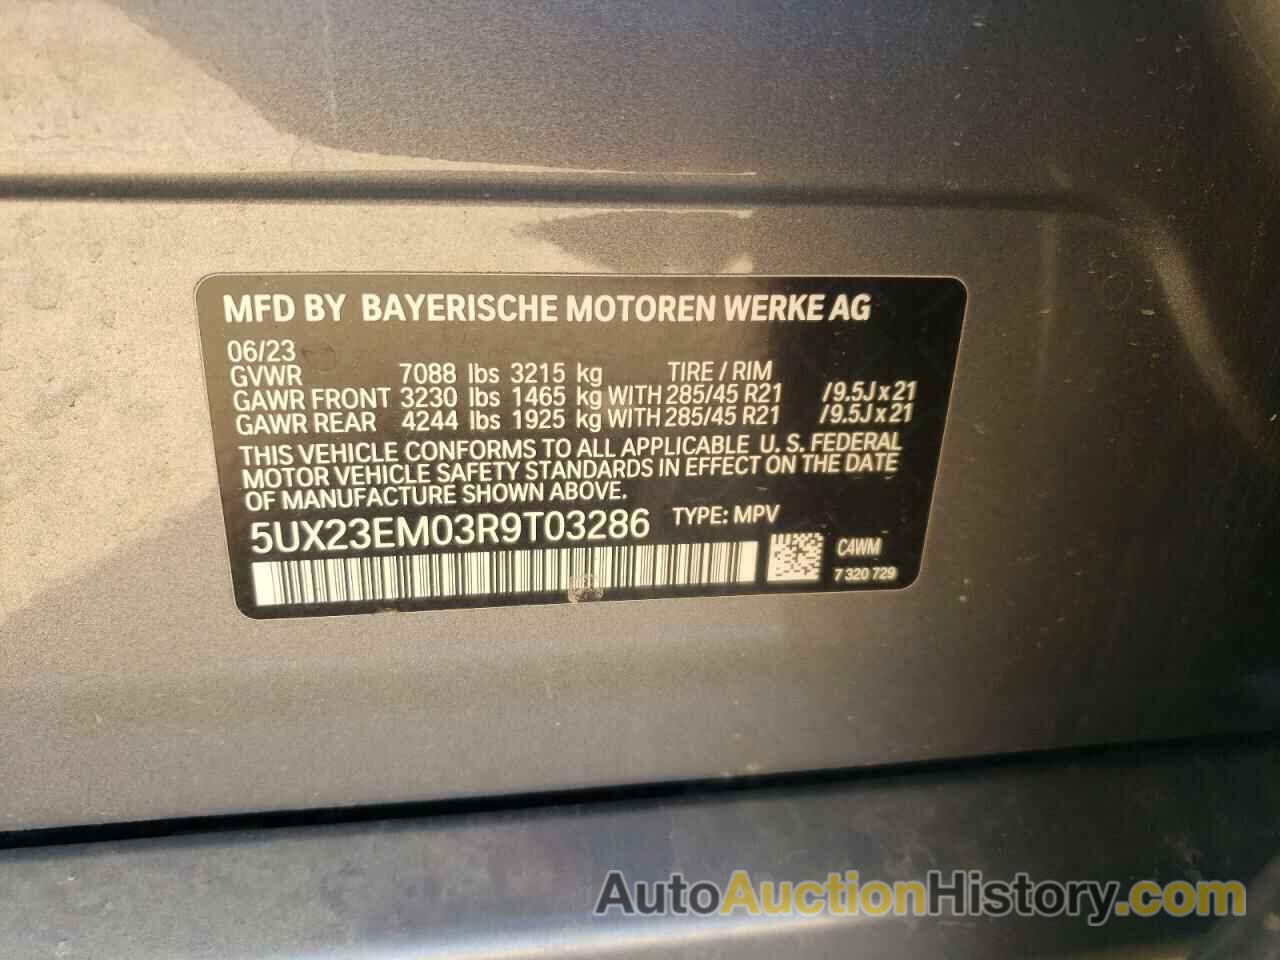 BMW X7 XDRIVE40I, 5UX23EM03R9T03286